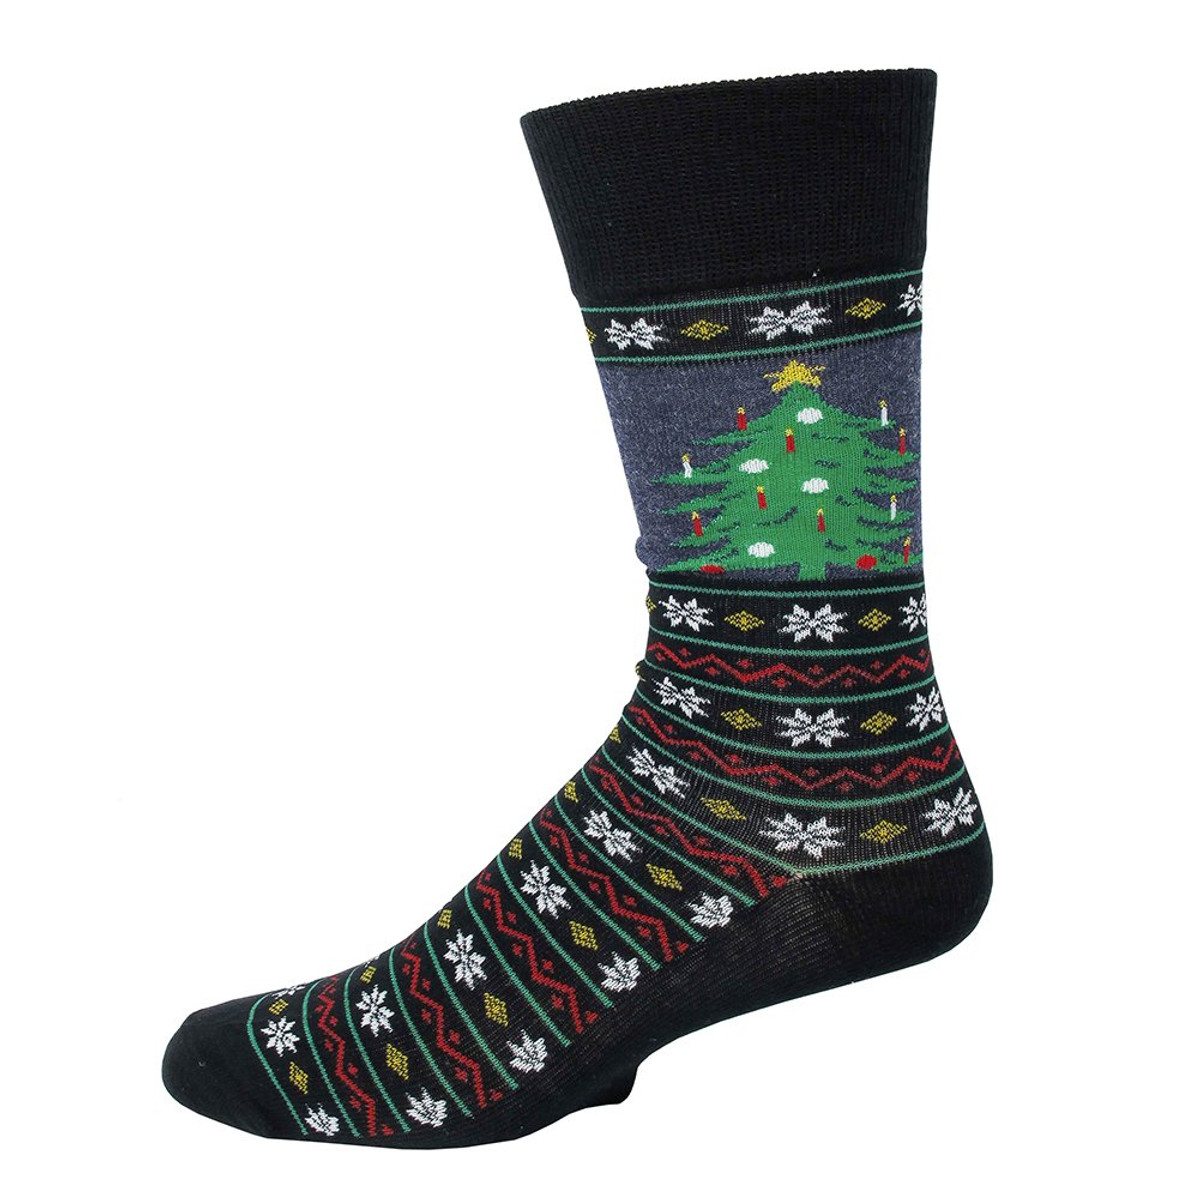 Men’s & Women’s Christmas Holiday Socks & Slipper Socks - Absolute Socks